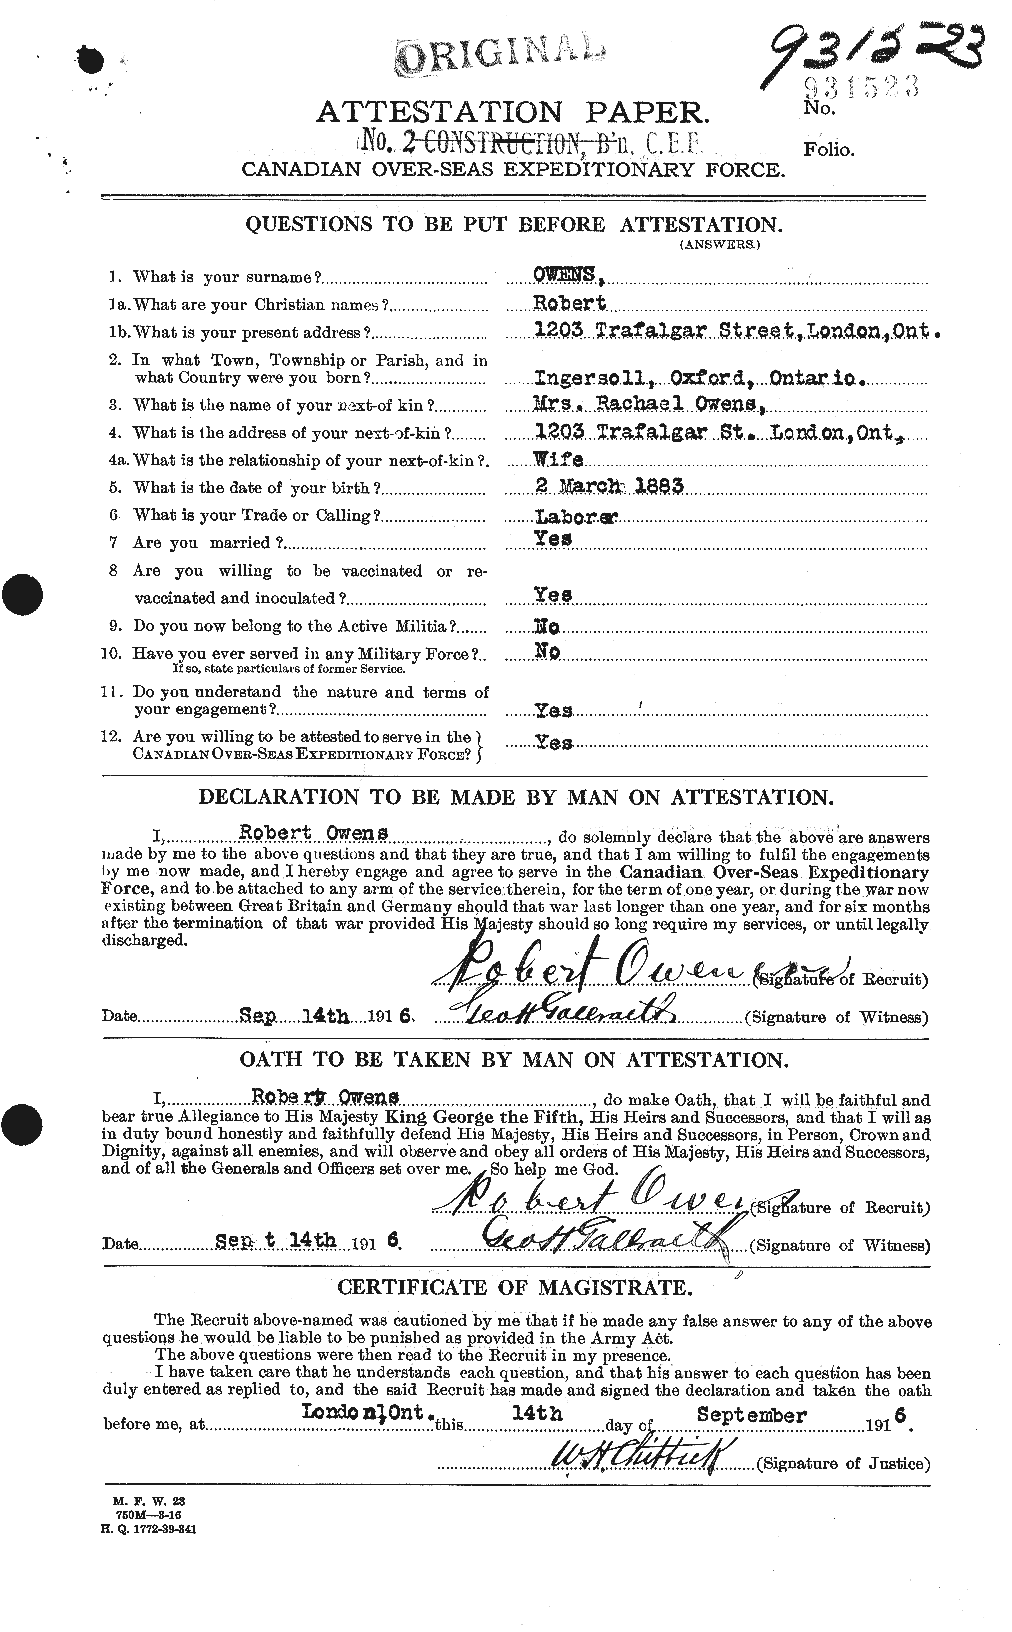 Dossiers du Personnel de la Première Guerre mondiale - CEC 561516a